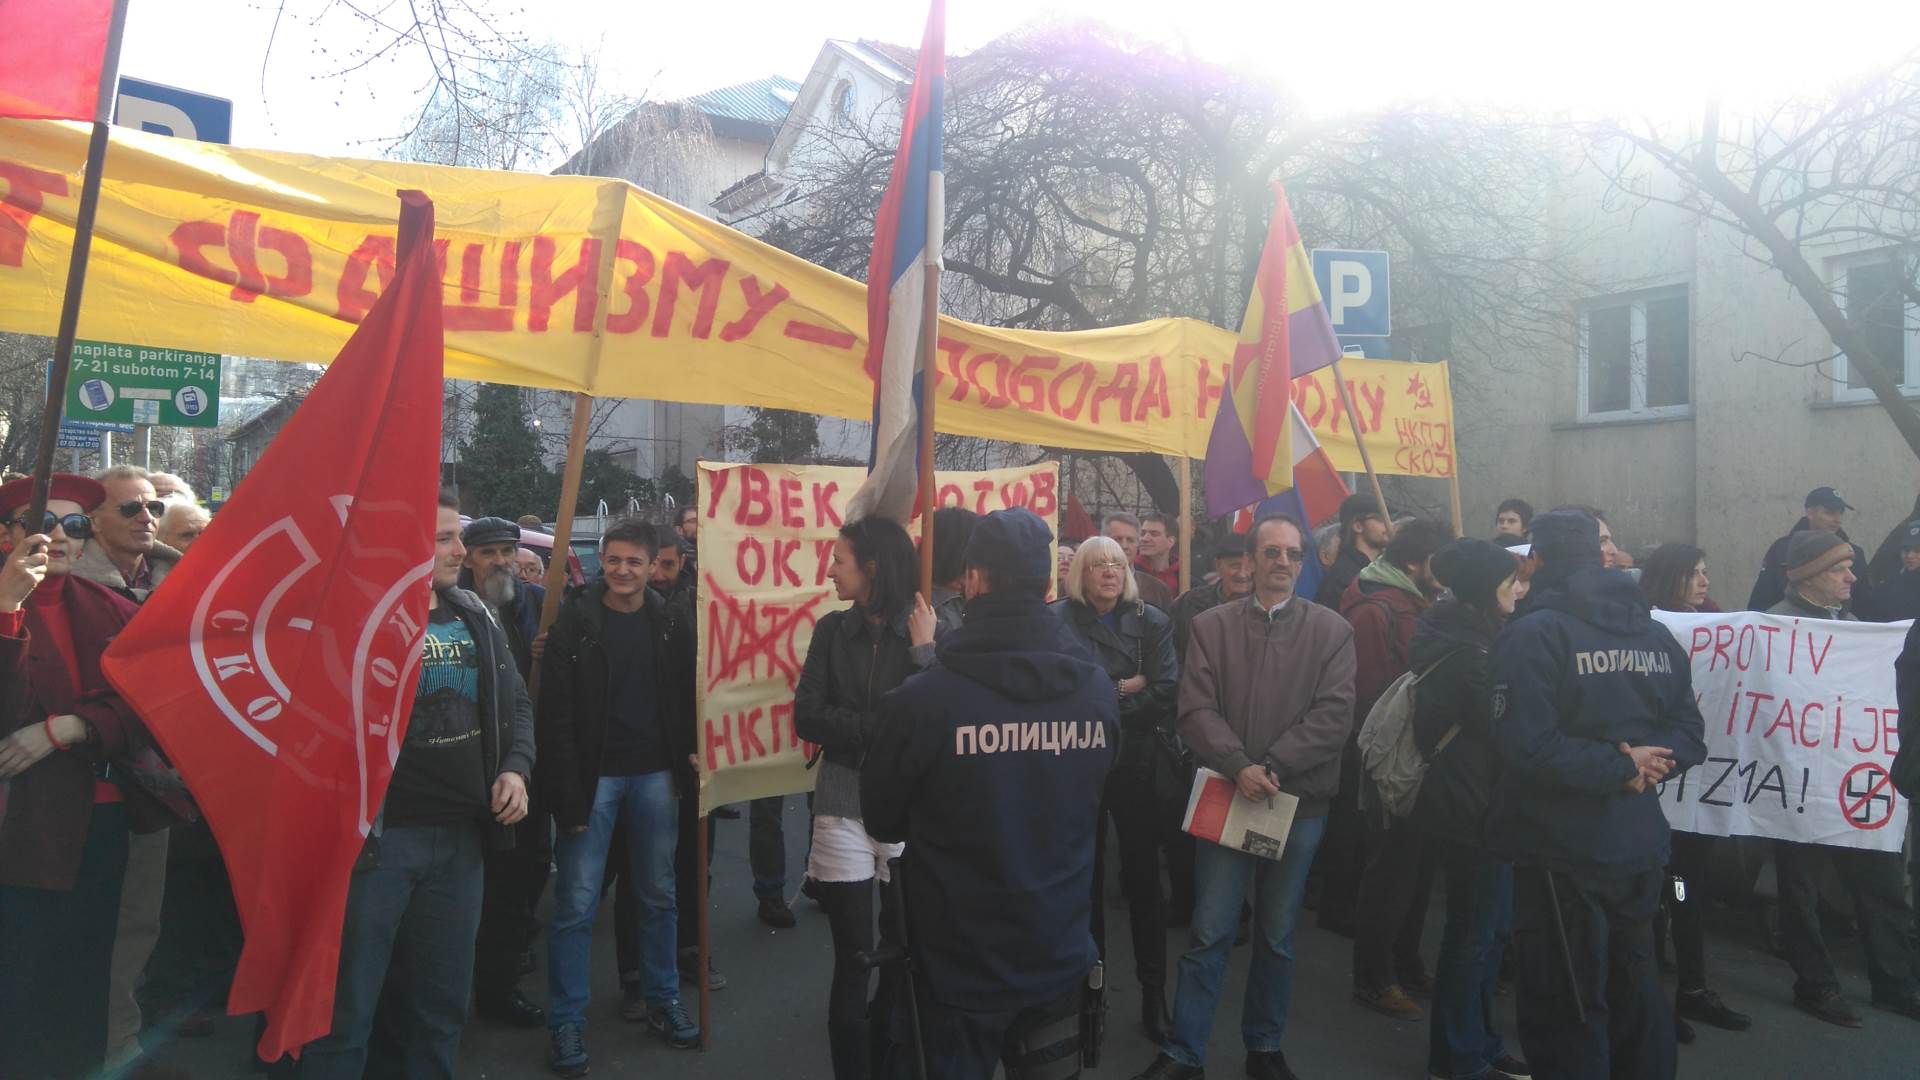  Protesti zbog Nedića: "Ustaše" i "Bando crvena"! 